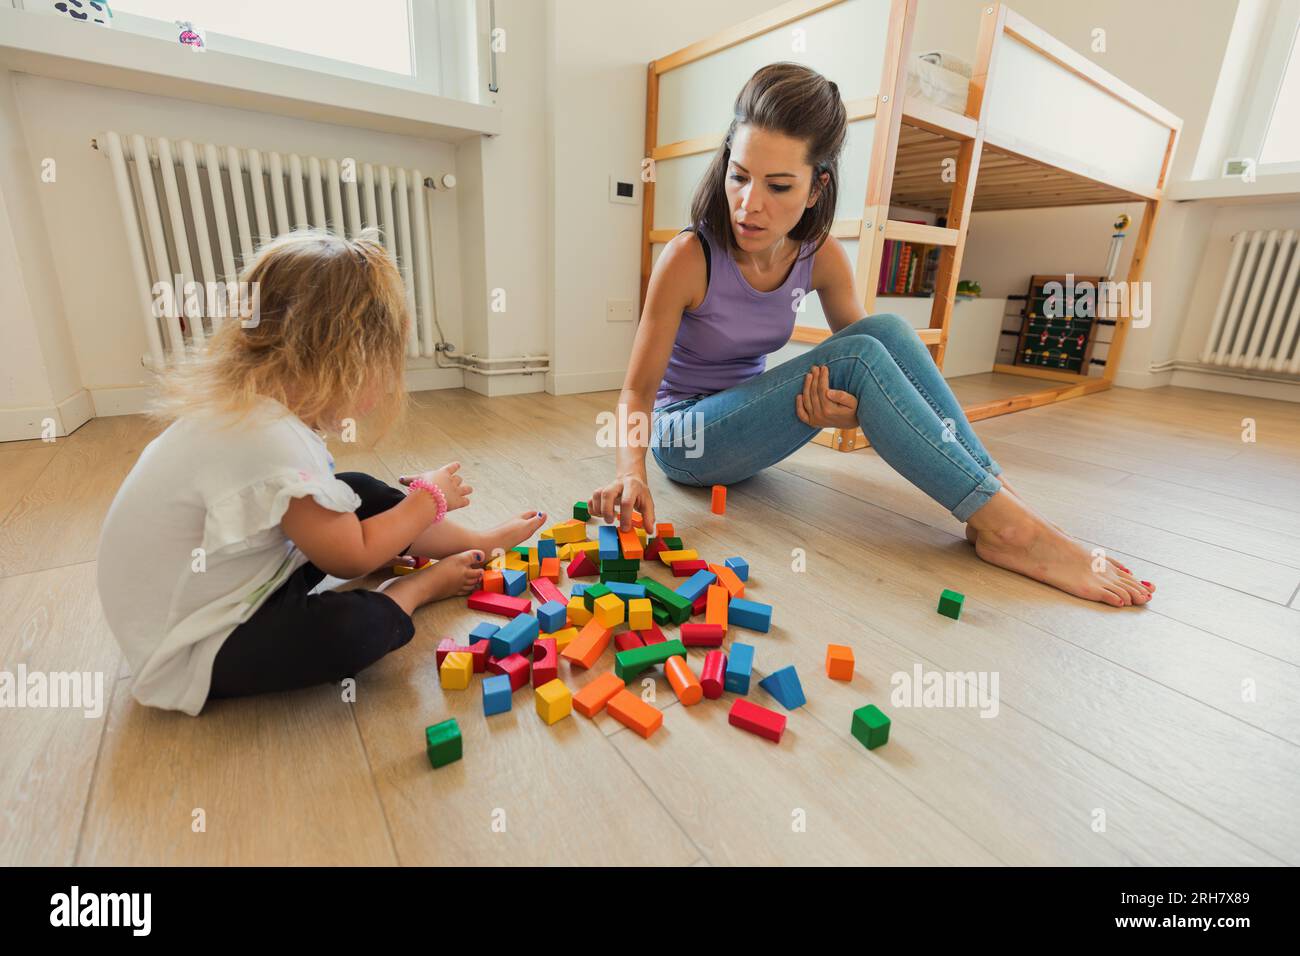 Im Spielzimmer erkunden eine Mutter und ihr blondes Kind Holzspielzeug, lernen und lachen, fördern die Kreativität und fördern die Bindung Stockfoto